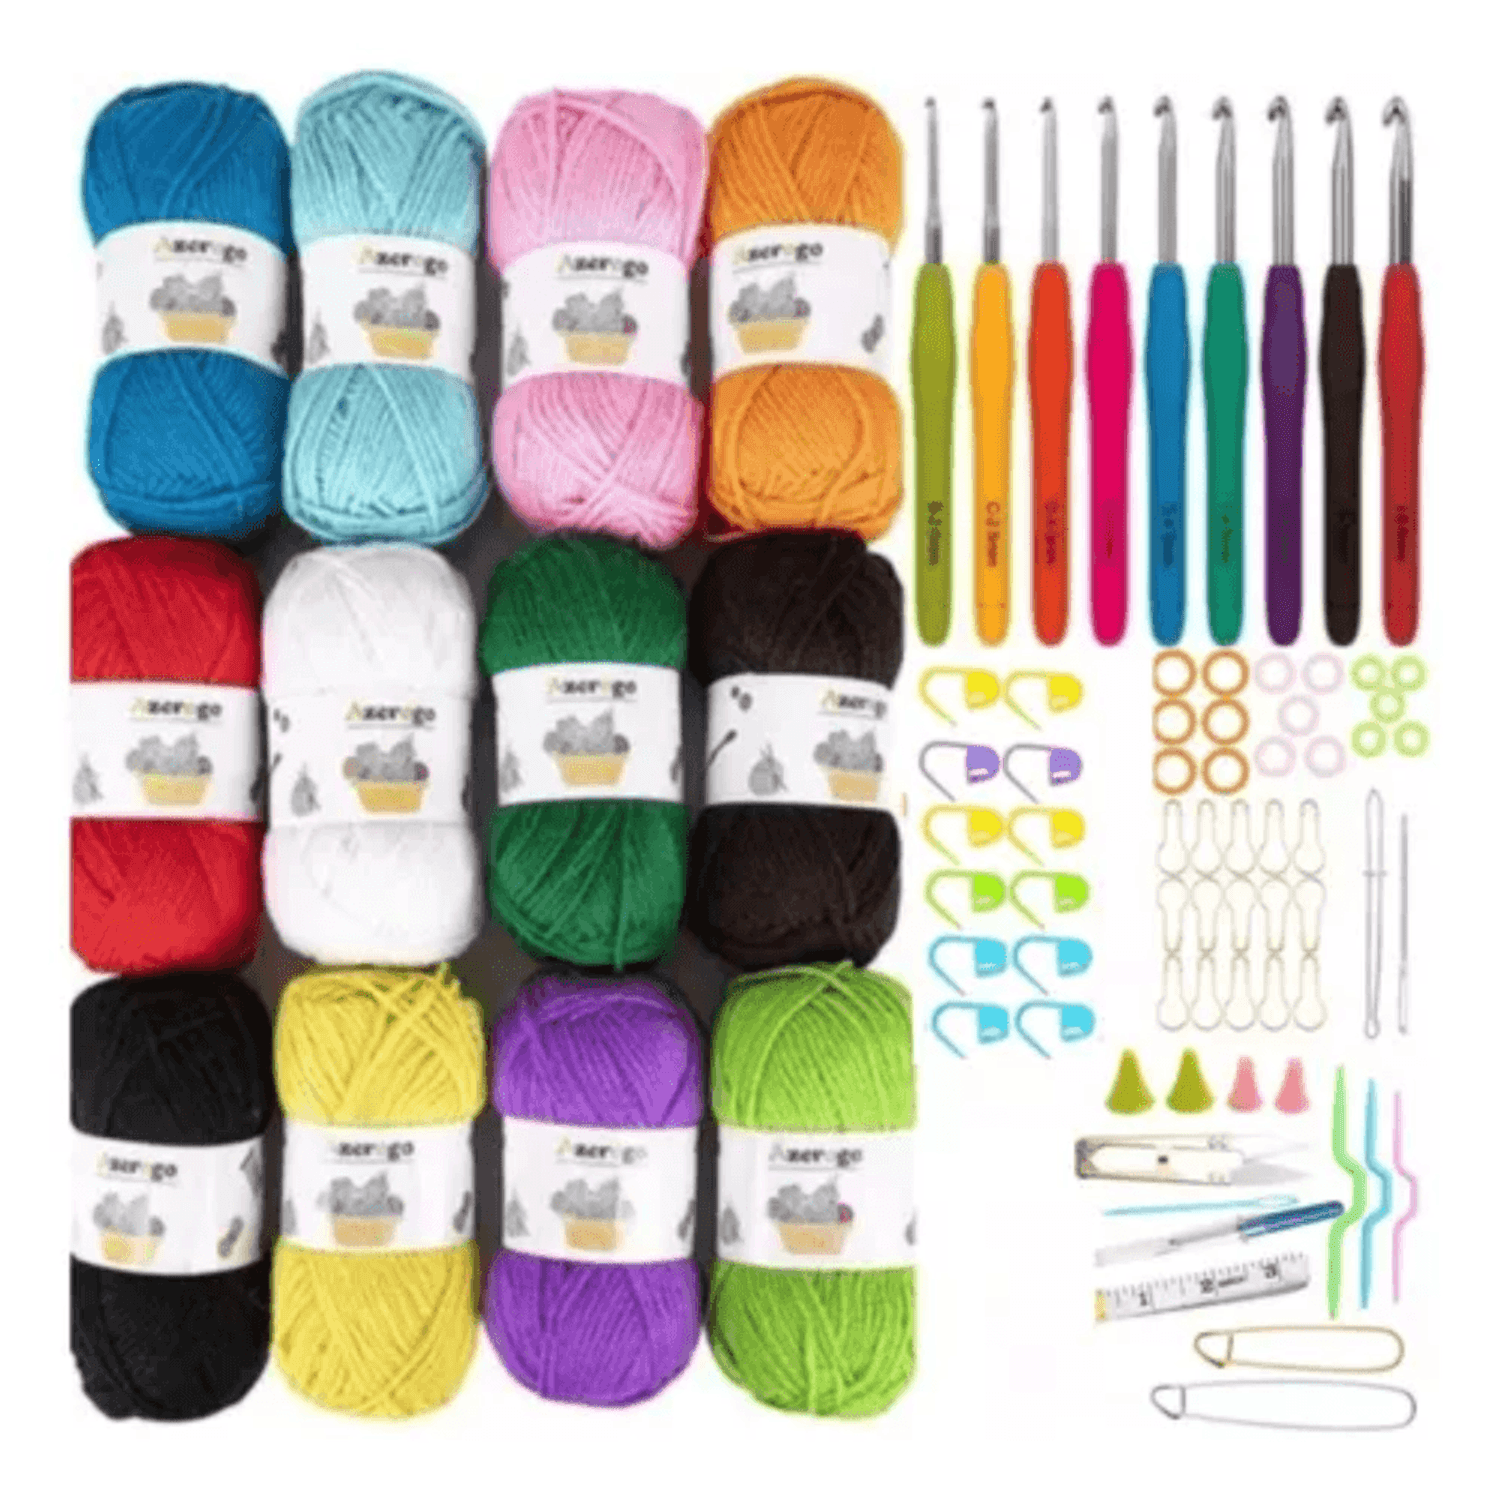 Set de Crochet Ganchillo para Tejer Más 12 Madejas de Lana Hilo